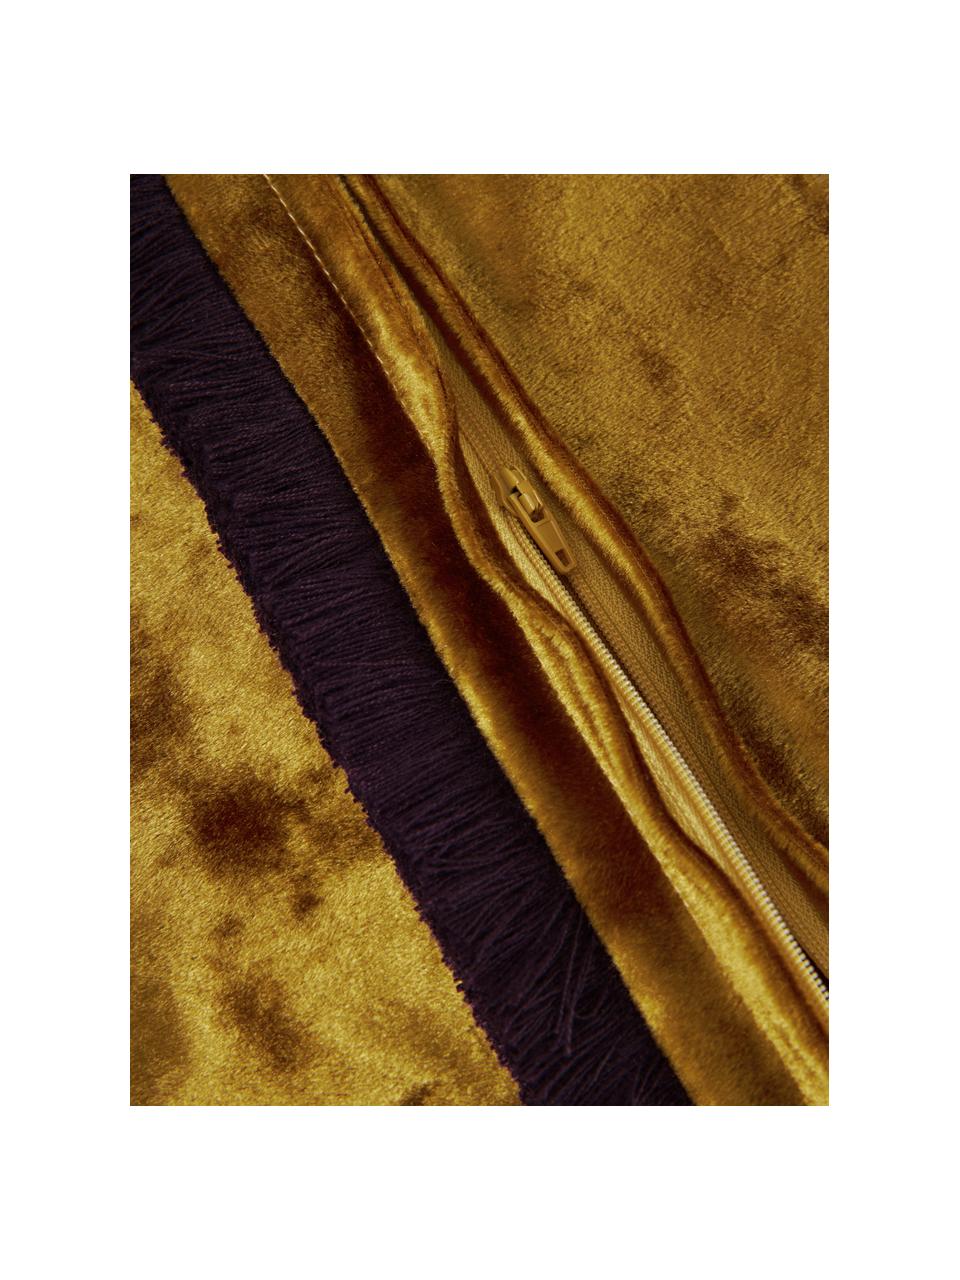 Federa arredo in velluto giallo ocra con frange Cyrus, Velluto (100% poliestere)
Oeko-Tex Standard 100, Classe 1, Giallo ocra, viola, Larg. 40 x Lung. 40 cm